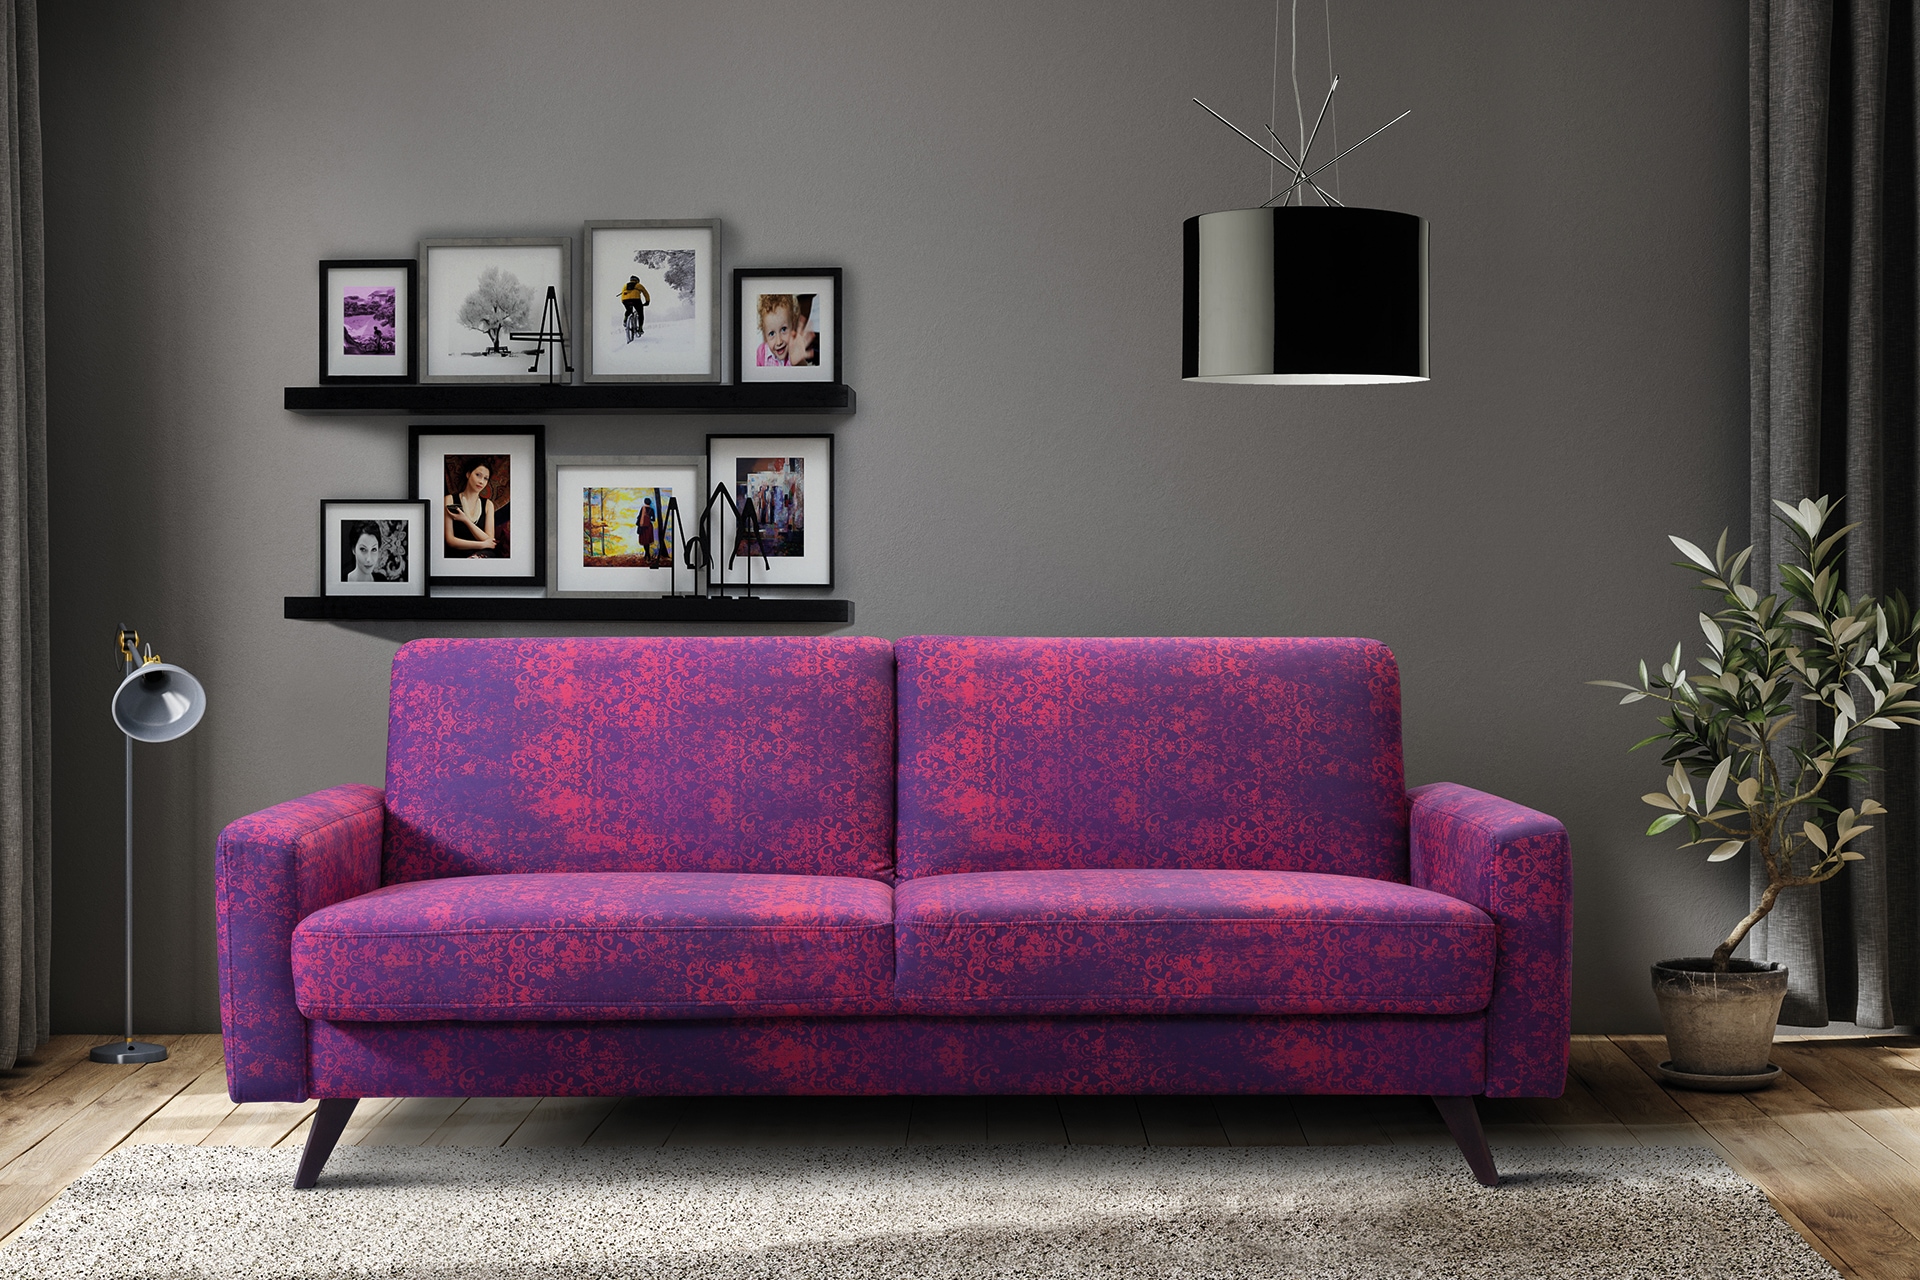 exxpo - sofa fashion 3-Sitzer, mit Schlaffunktion, Bettkasten und Holzfüsse